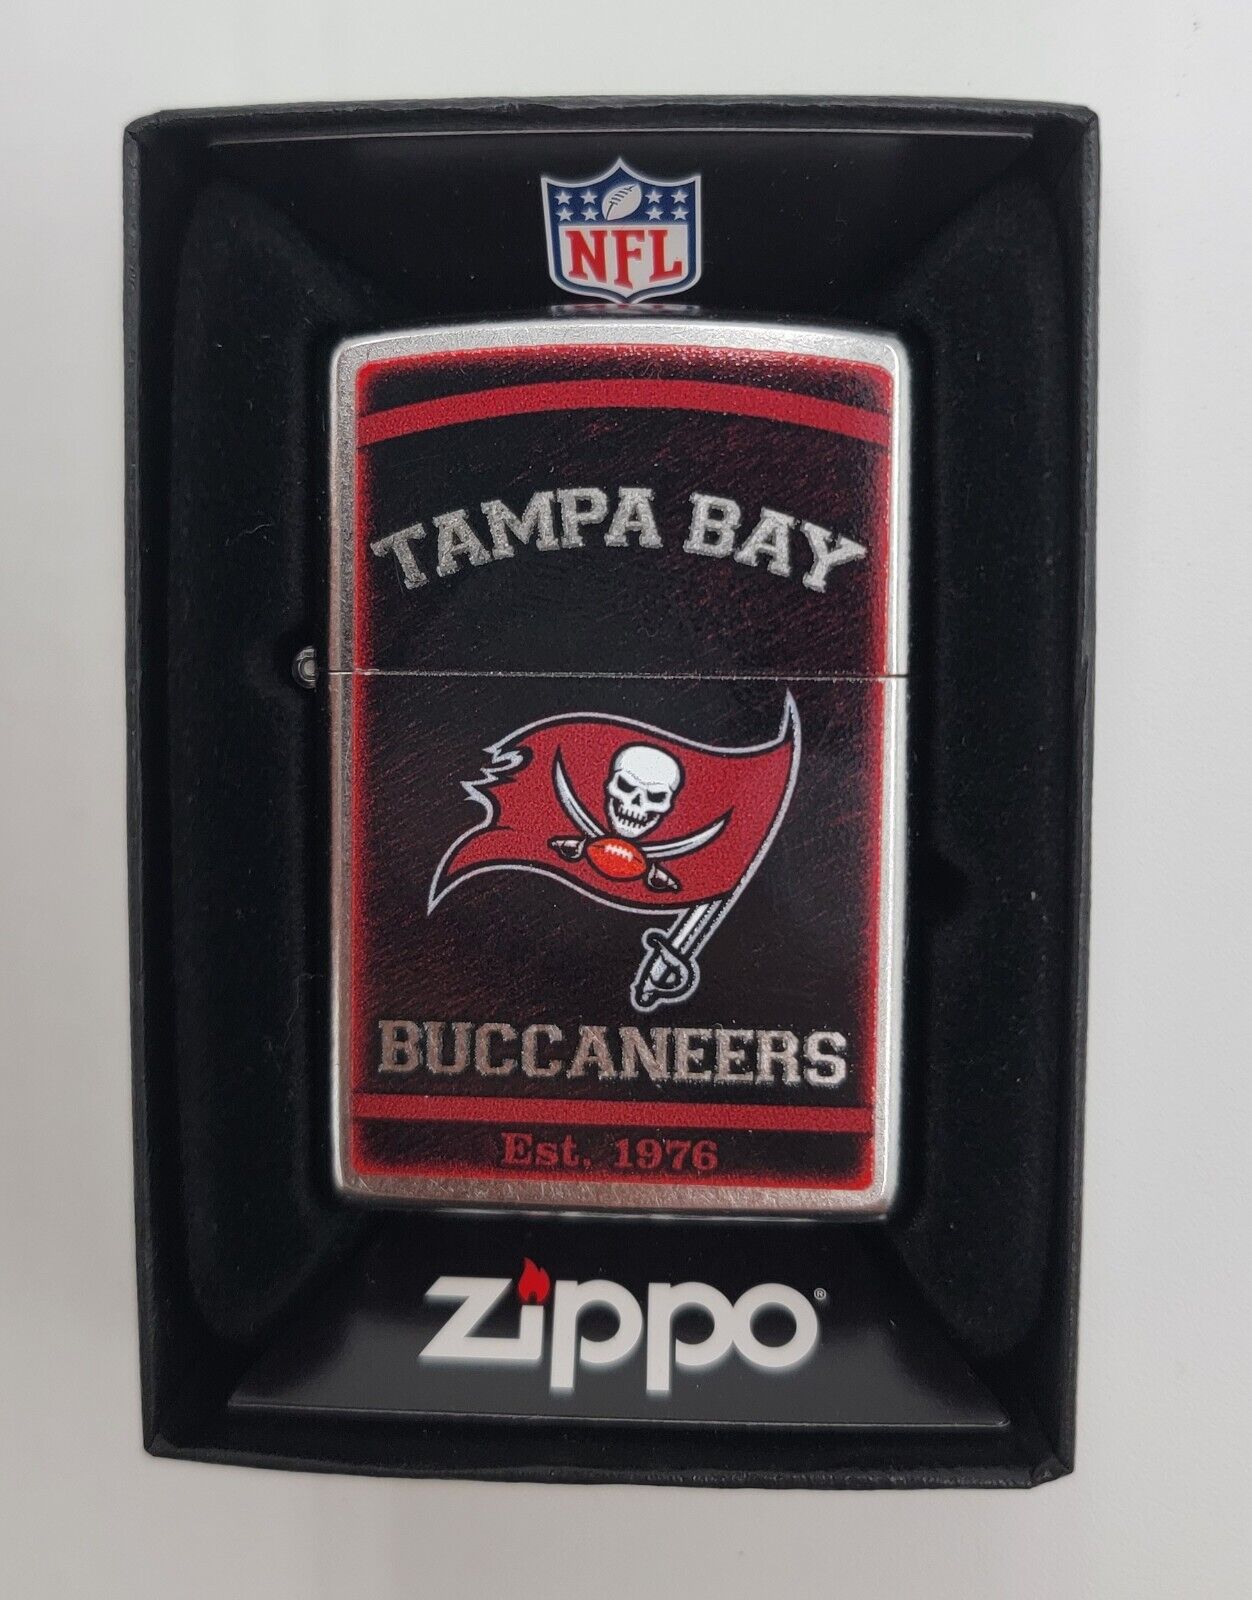 NFL - Tampa Bay Buccaneers - Zippo Lighter - New